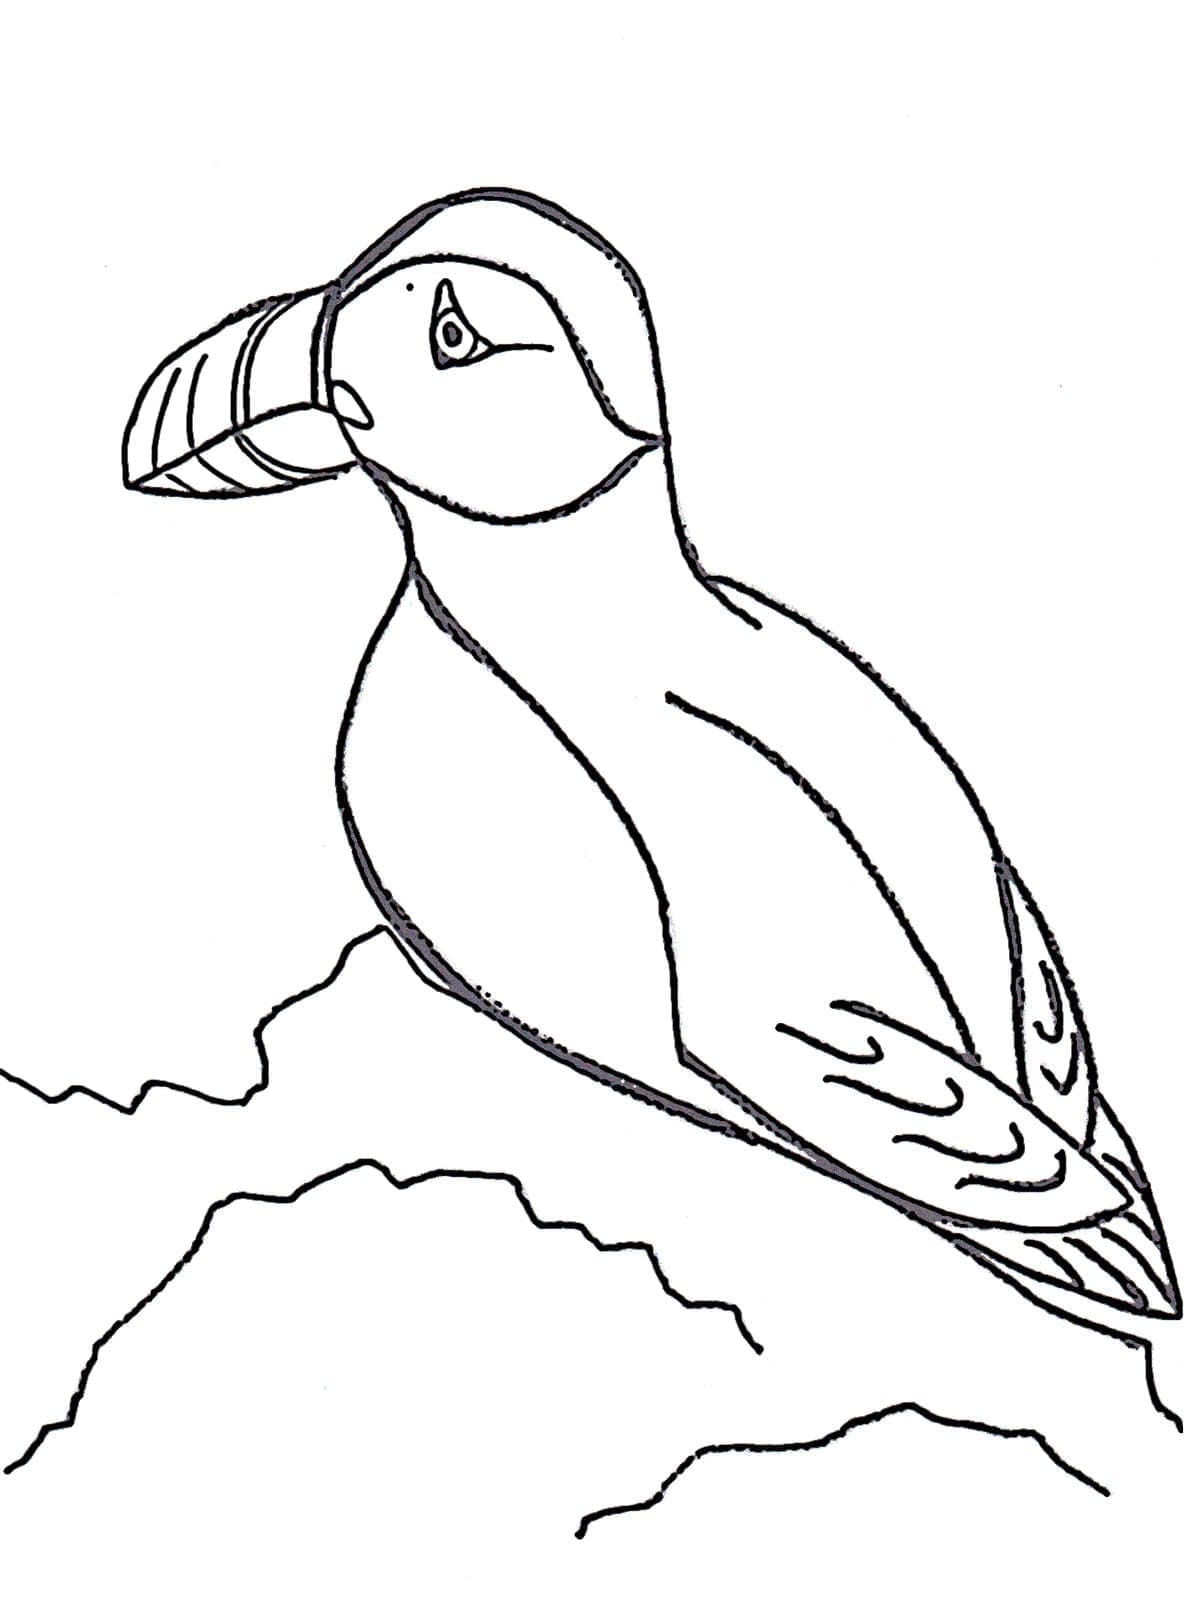 Målarbild Lunnefågel - sjöfågel